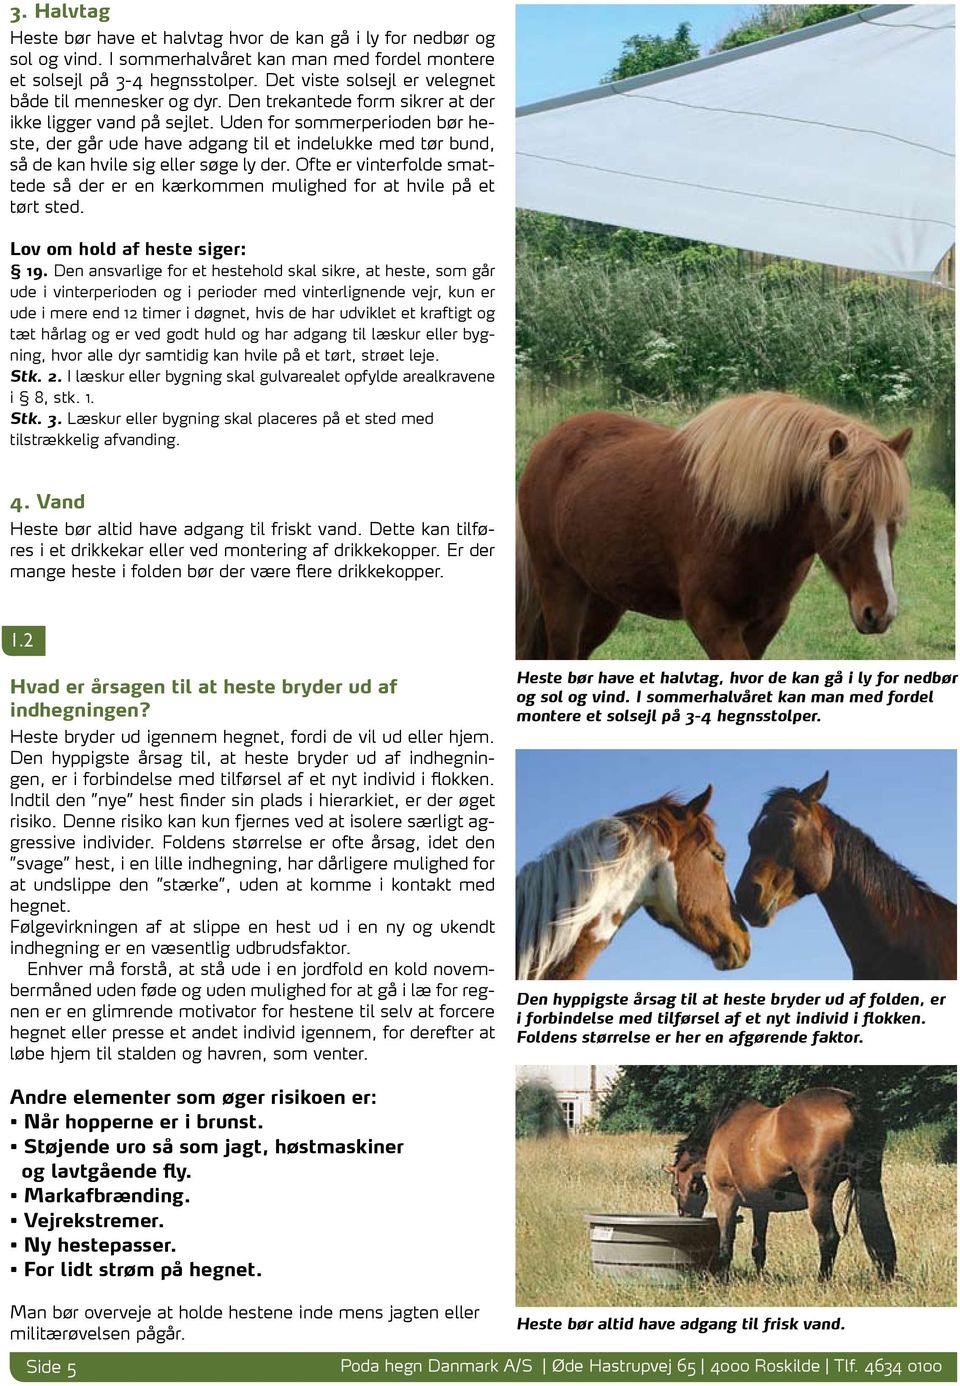 Uden for sommerperioden bør heste, der går ude have adgang til et indelukke med tør bund, så de kan hvile sig eller søge ly der.